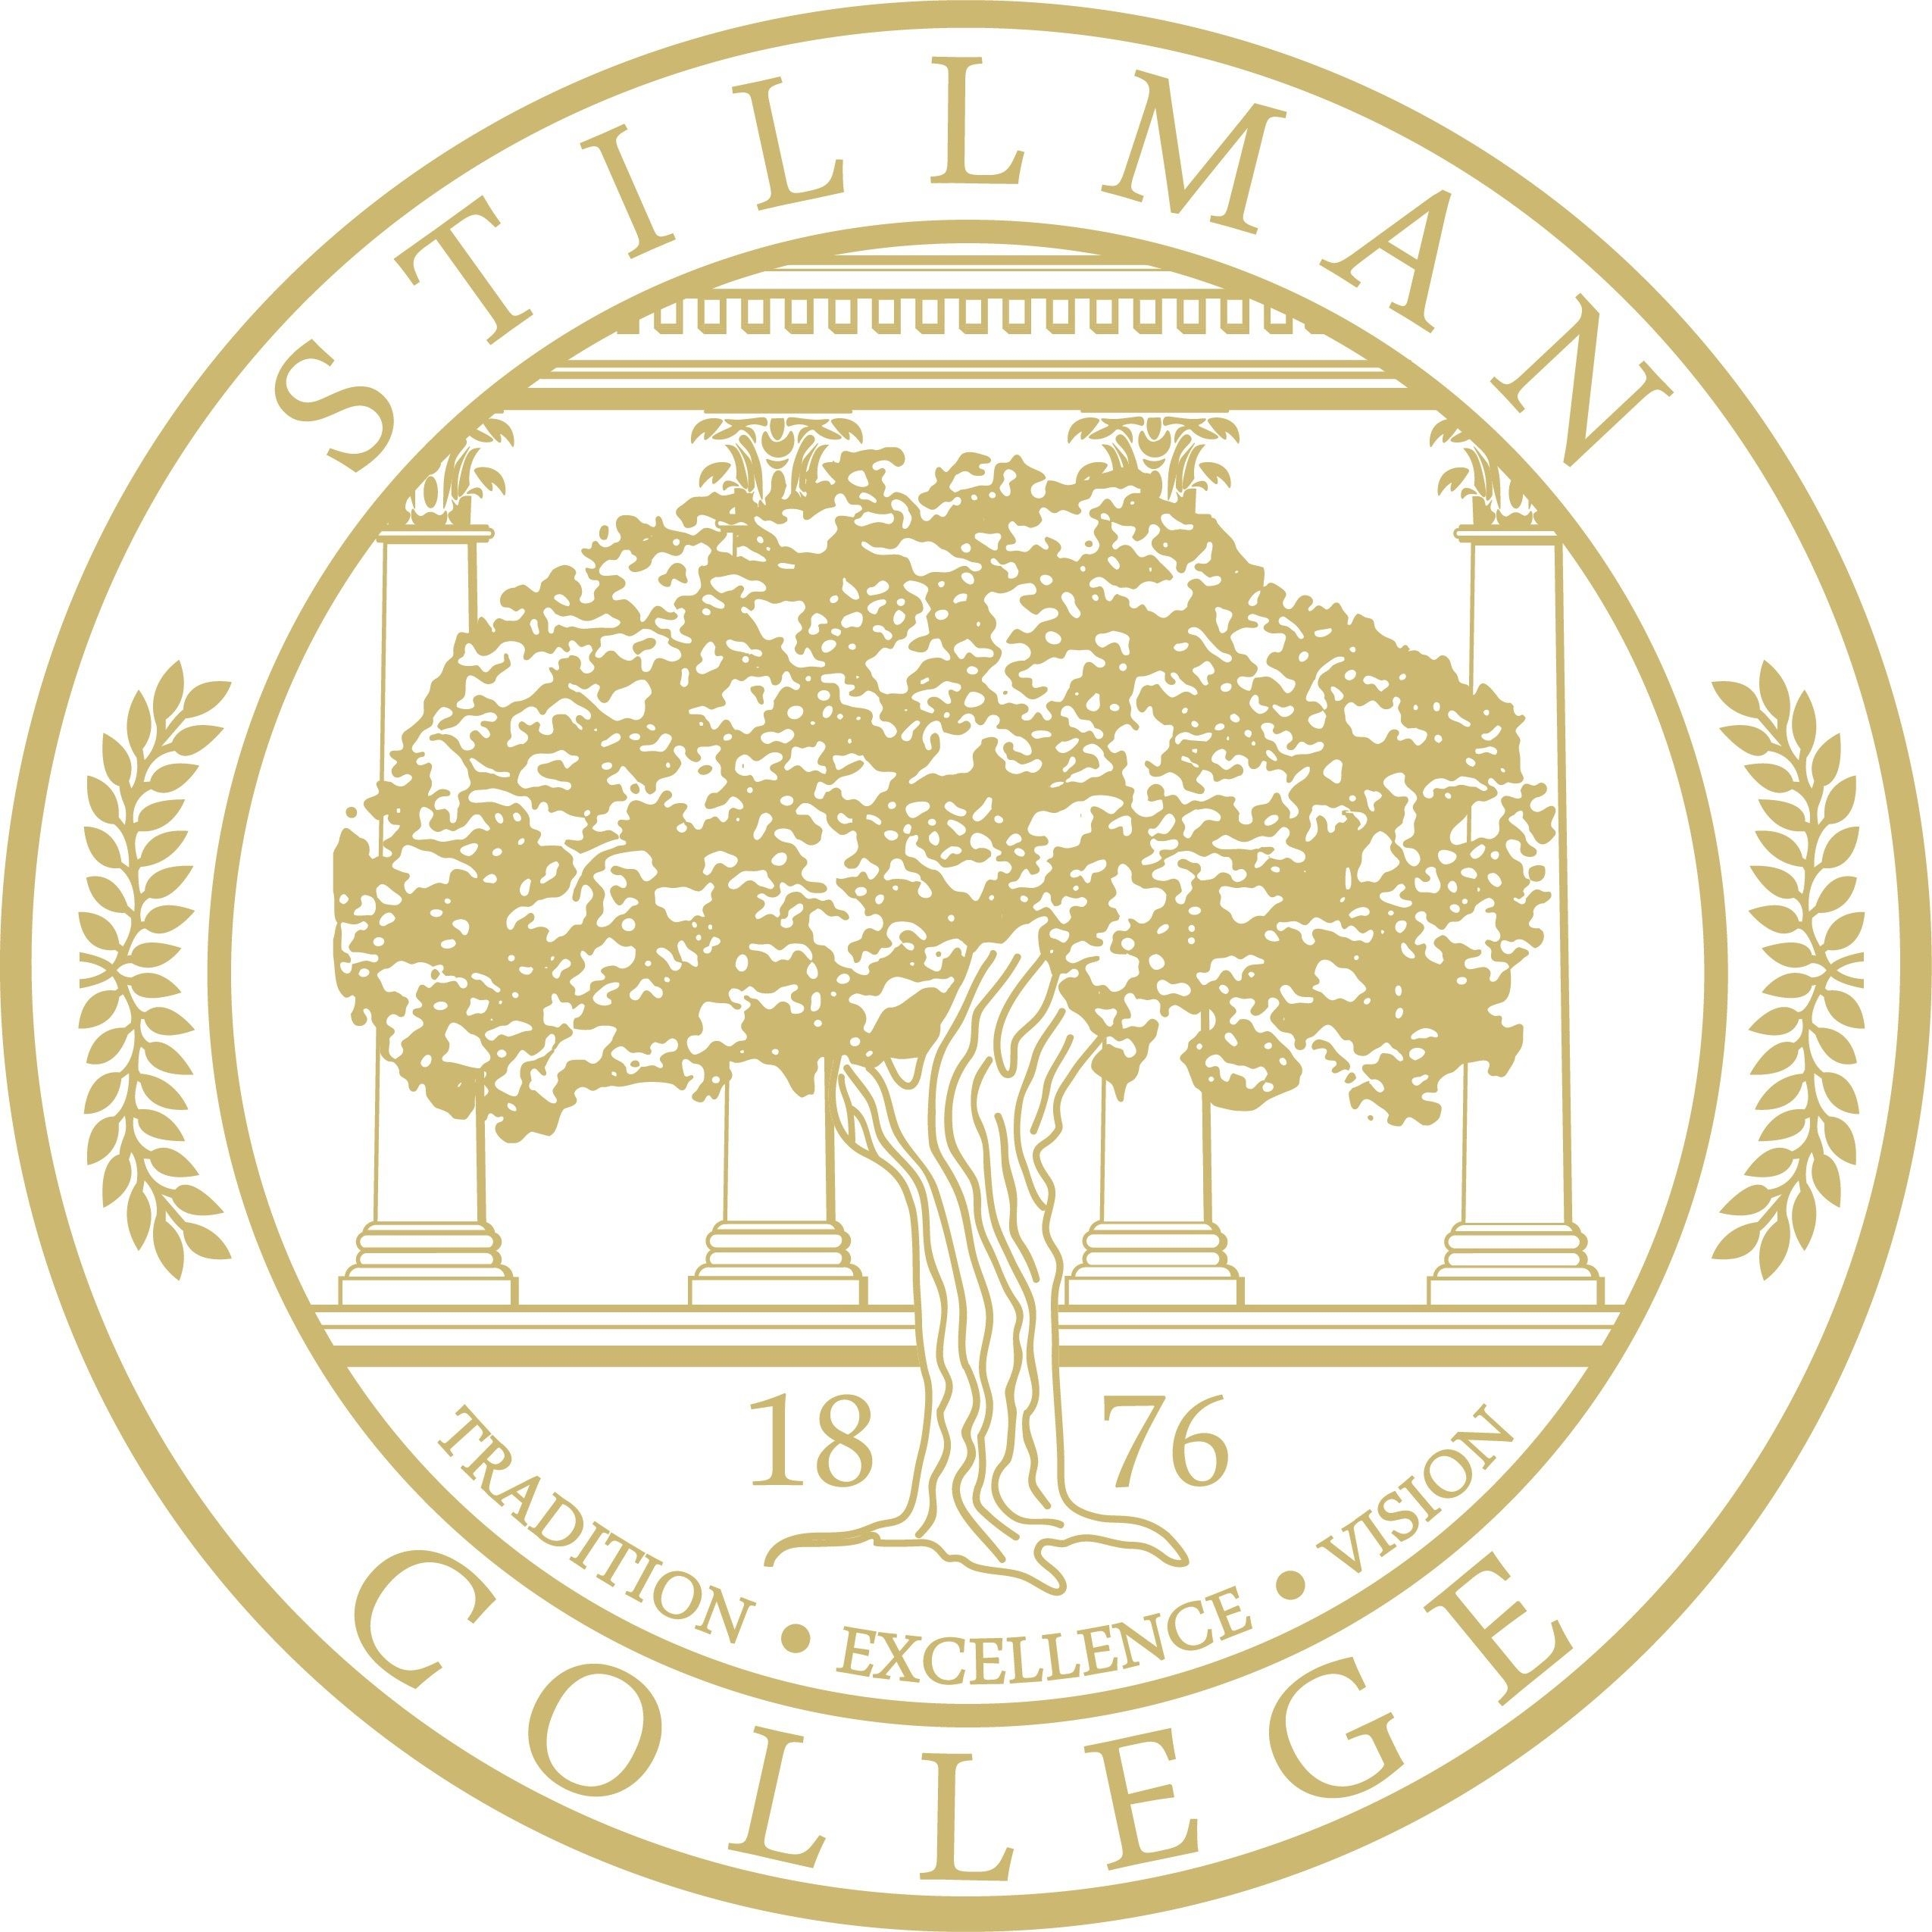 Kloset Stillman College